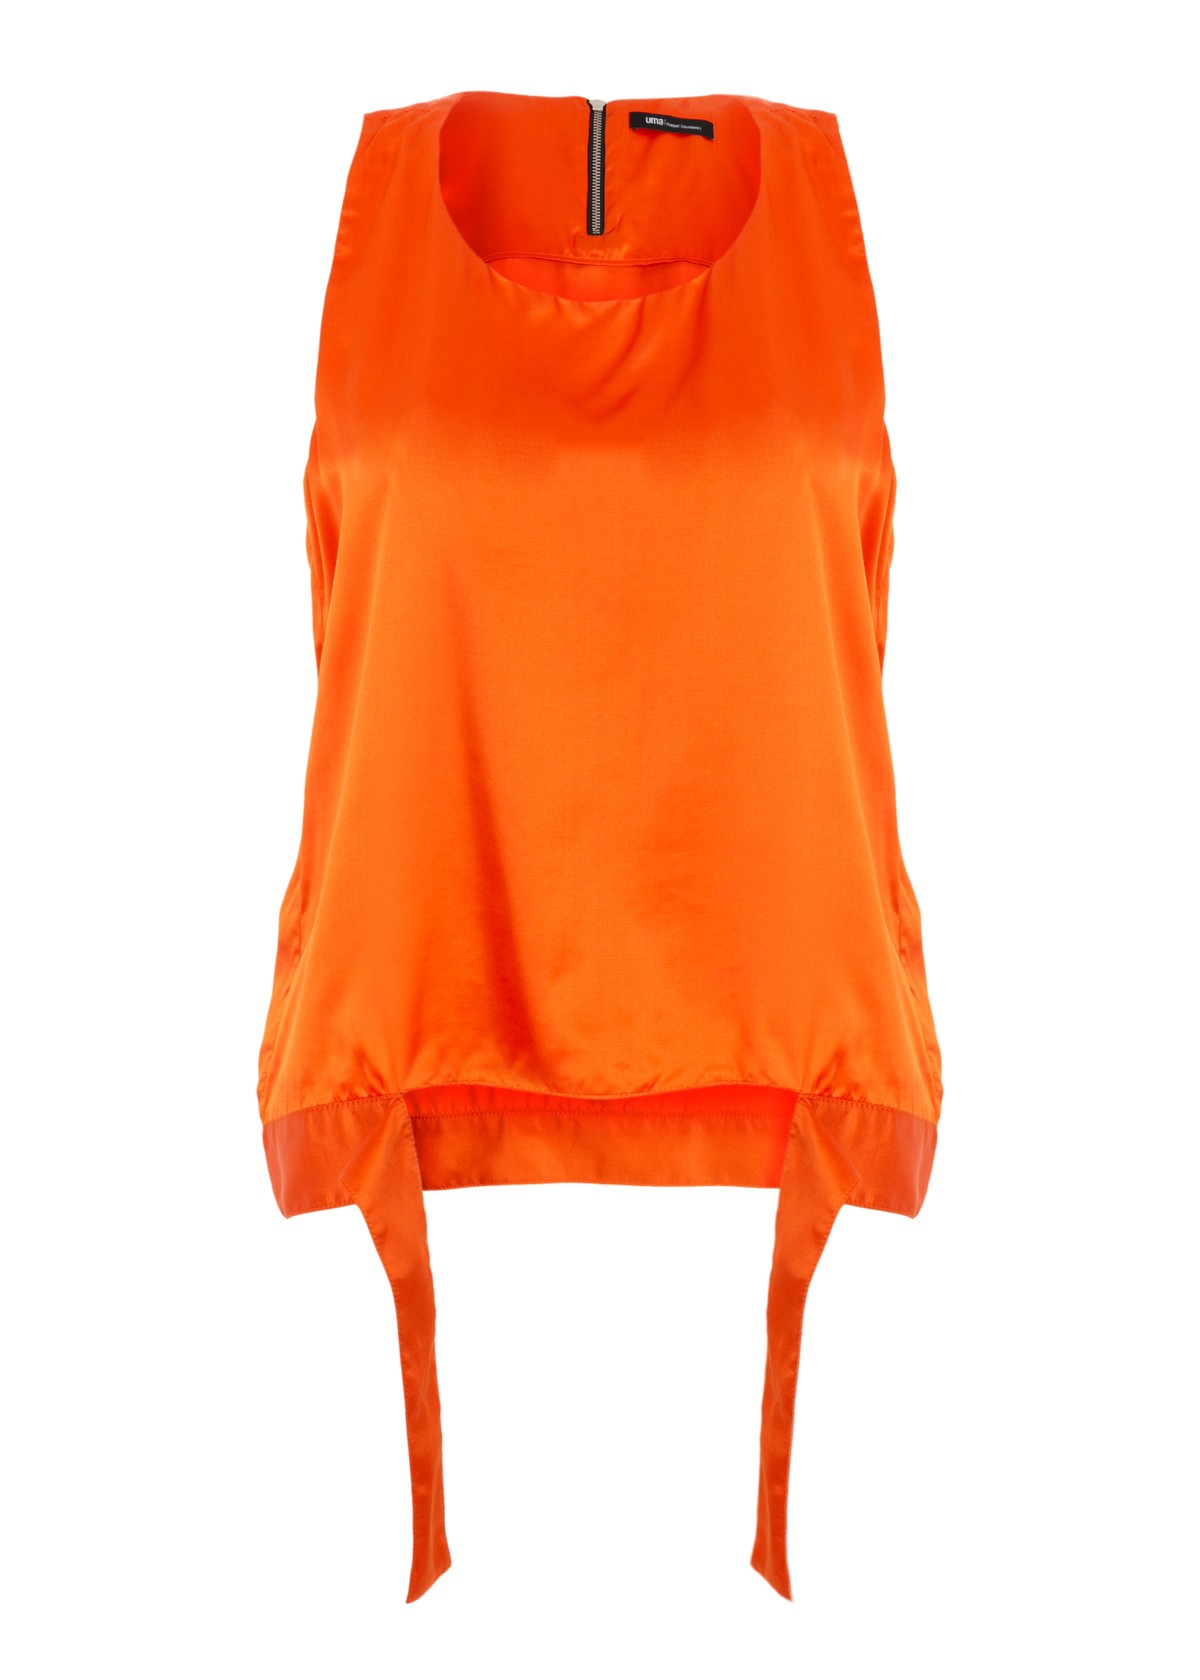 top estilo regata acetinado | silk sleeveless top with detail